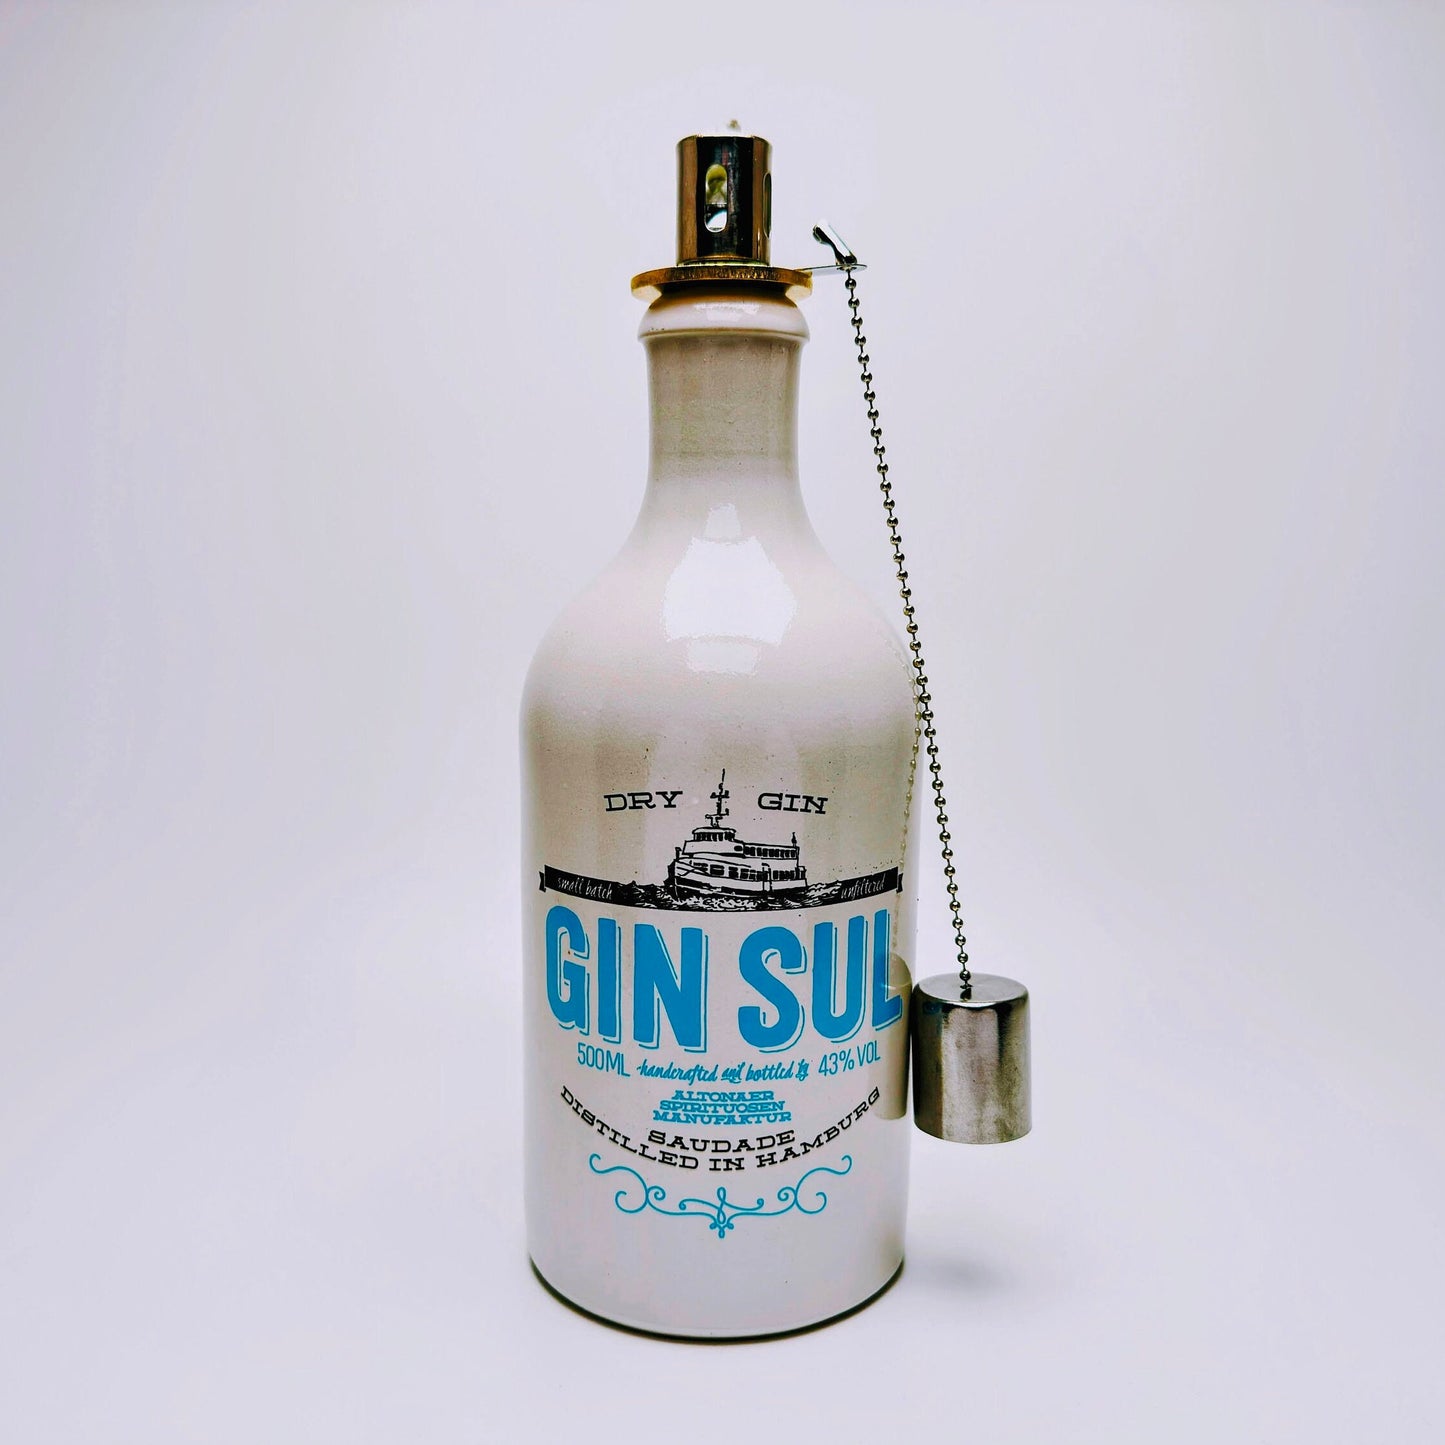 Gin Öllampe "Sul" | Handgemachte Öllampe aus Gin Sul Flaschen | Upcycling | Handgefertigt | Individuell | Geschenk | Hamburg | Deko | H:24cm